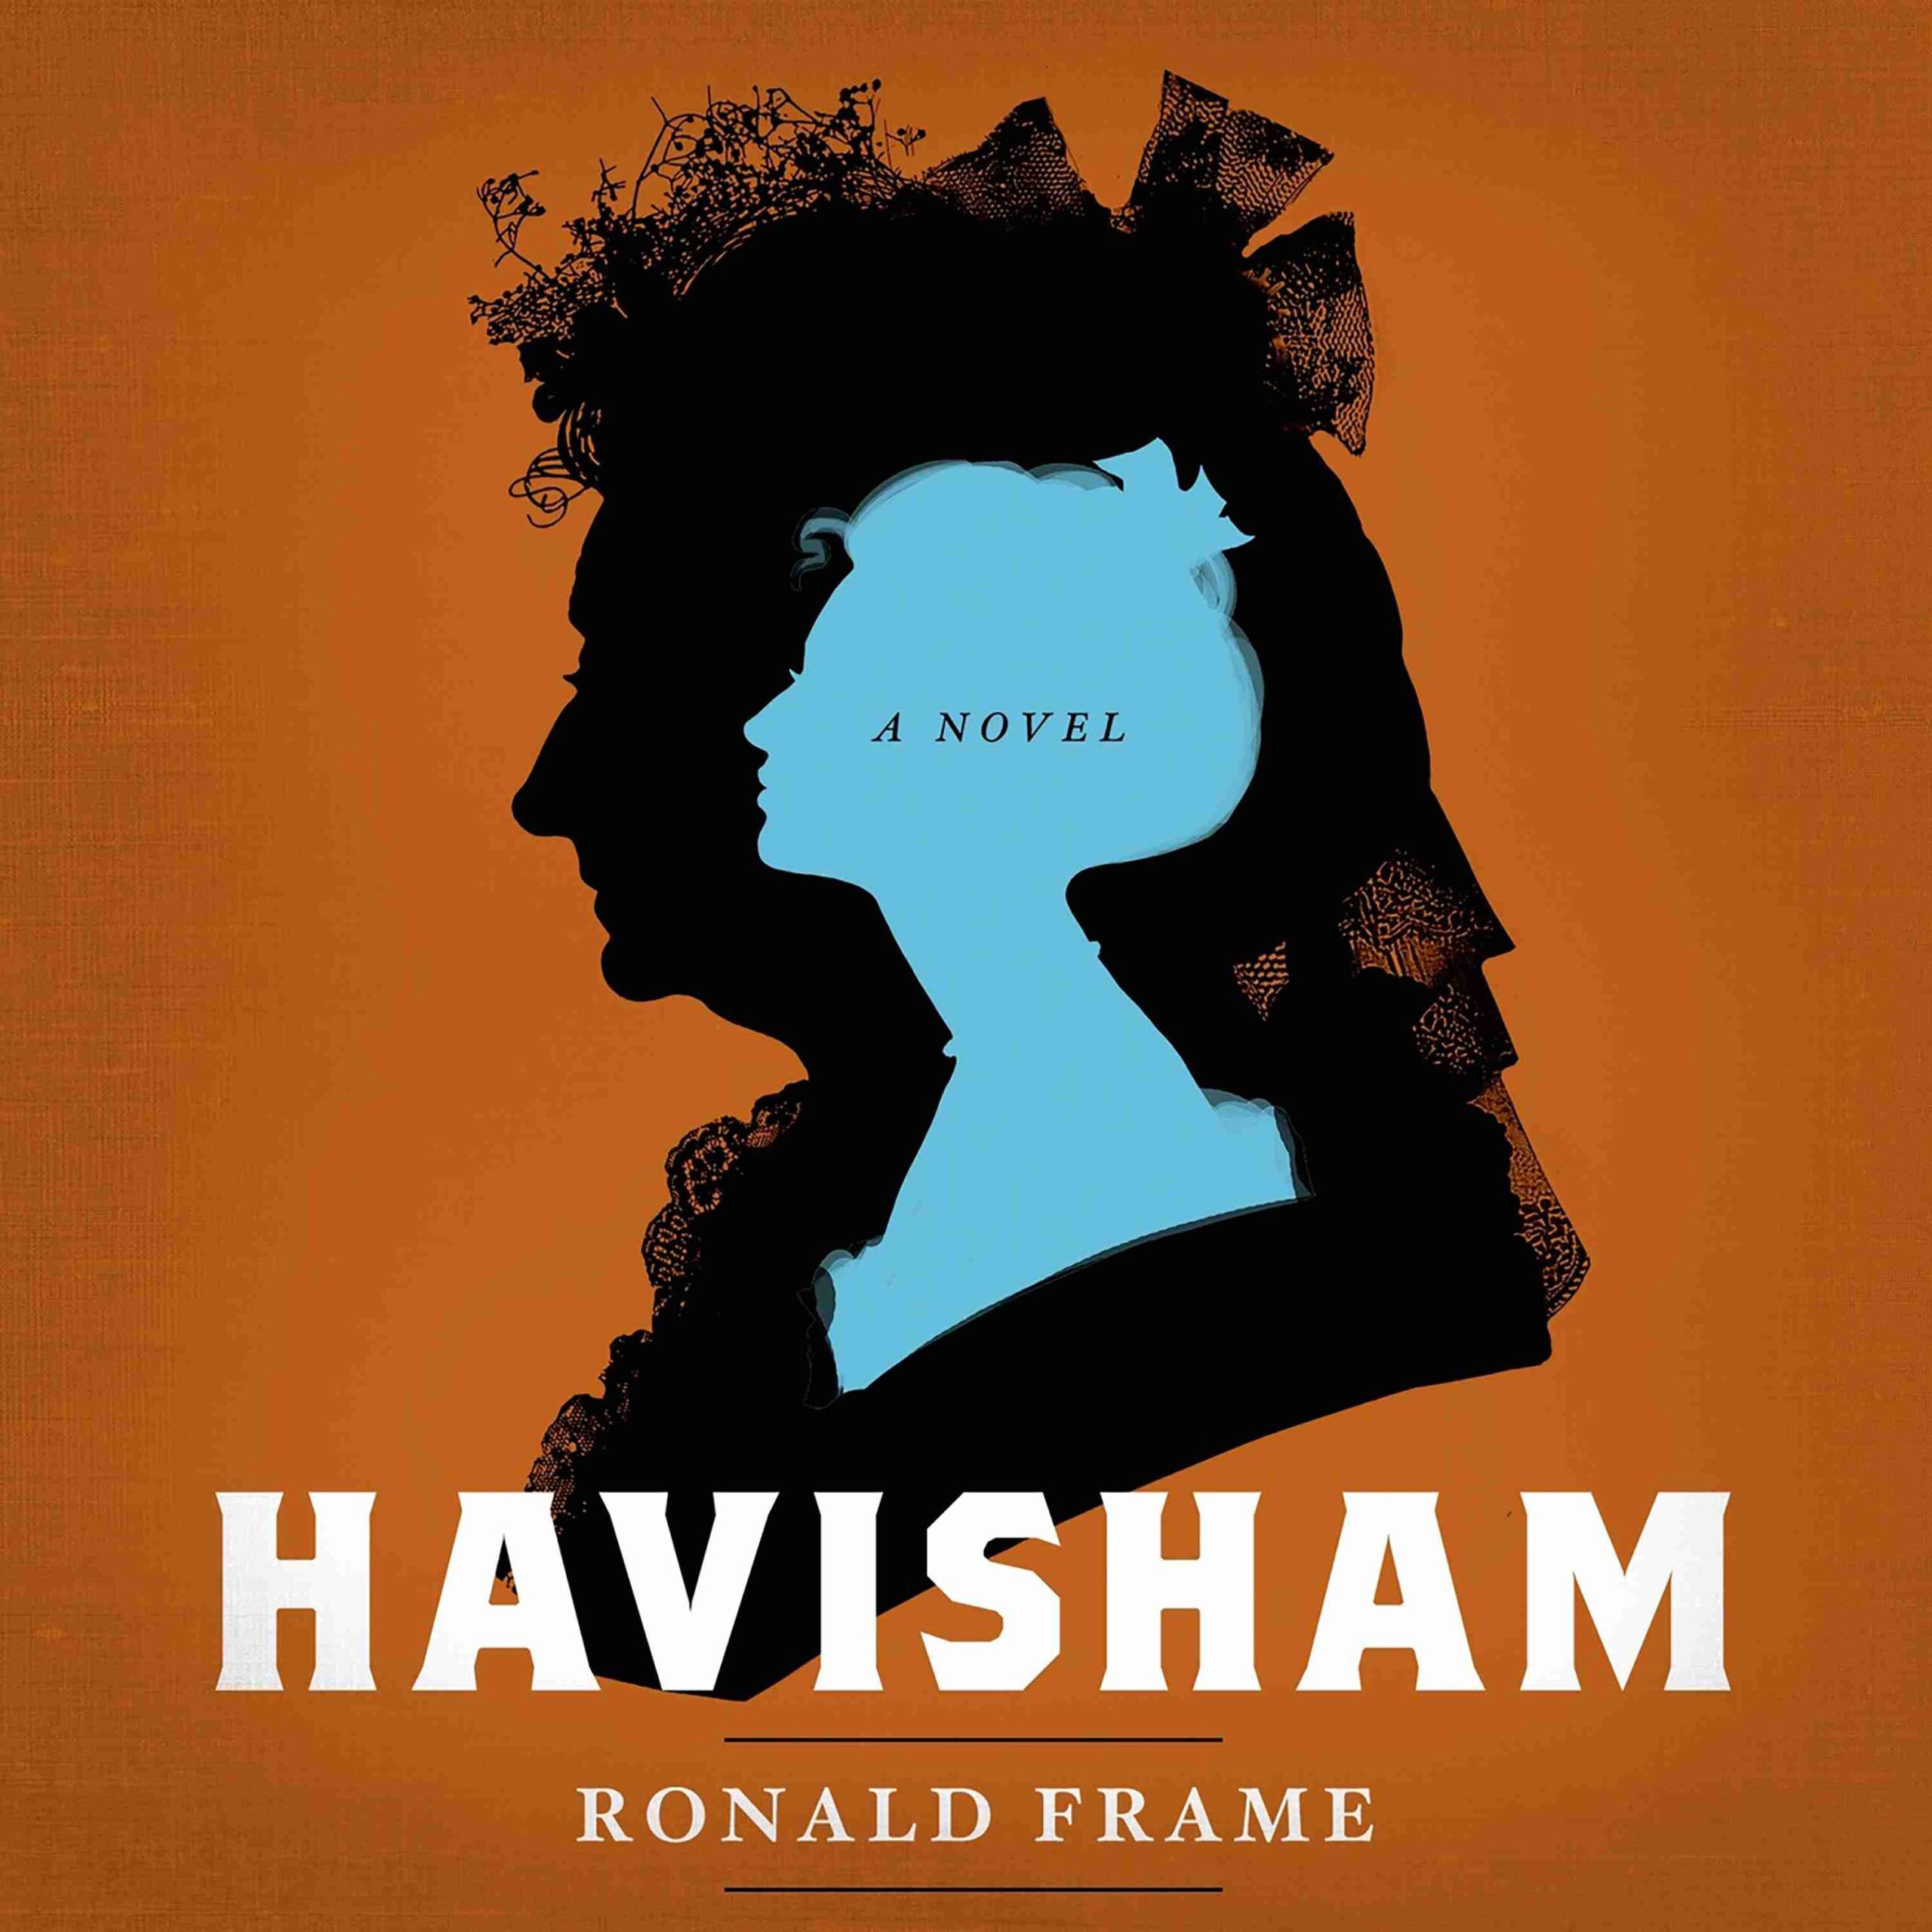 Havisham byRonald Frame Audiobook. 26.99 USD